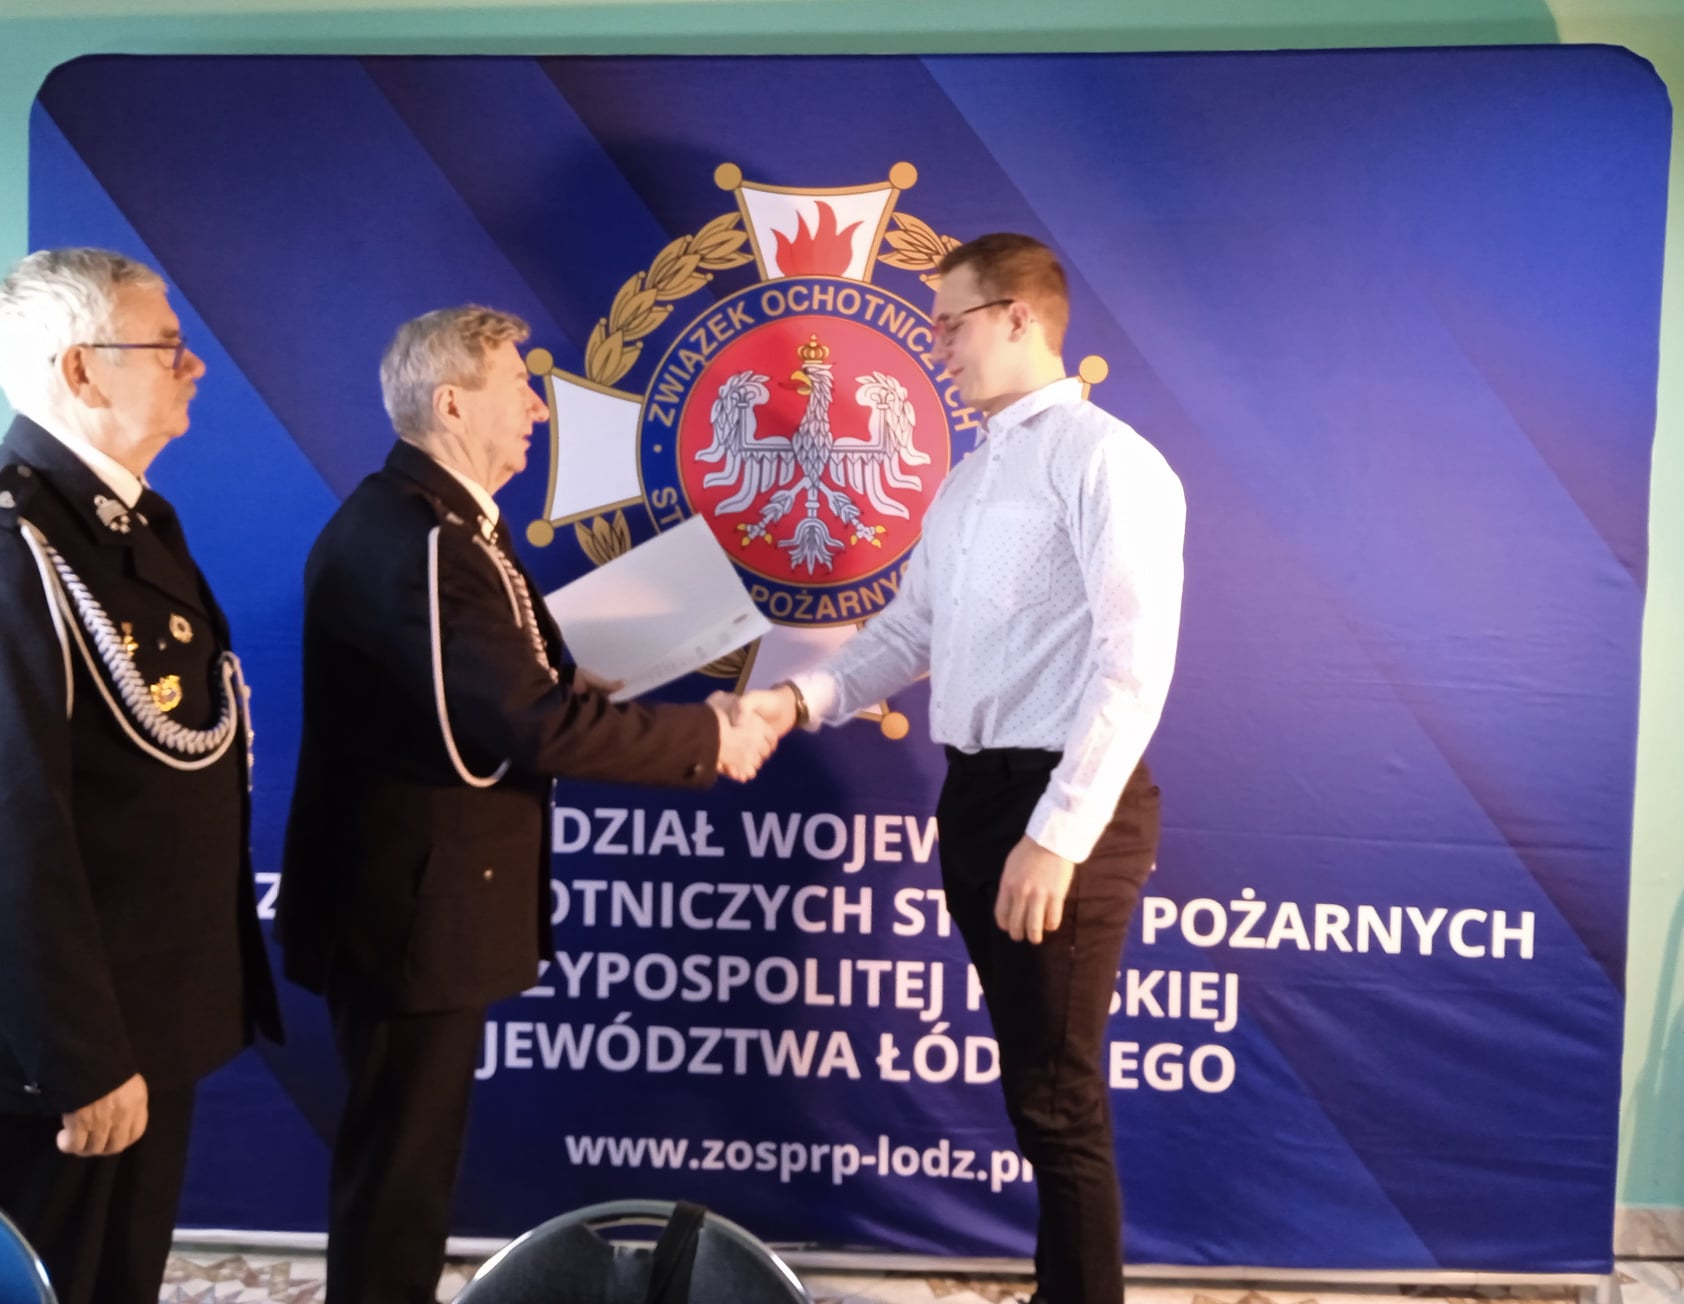 Prezes i wice prezes Wojewódzkiego oddziału ZOSP RP woj. łódzkiego wręczają nagrodę